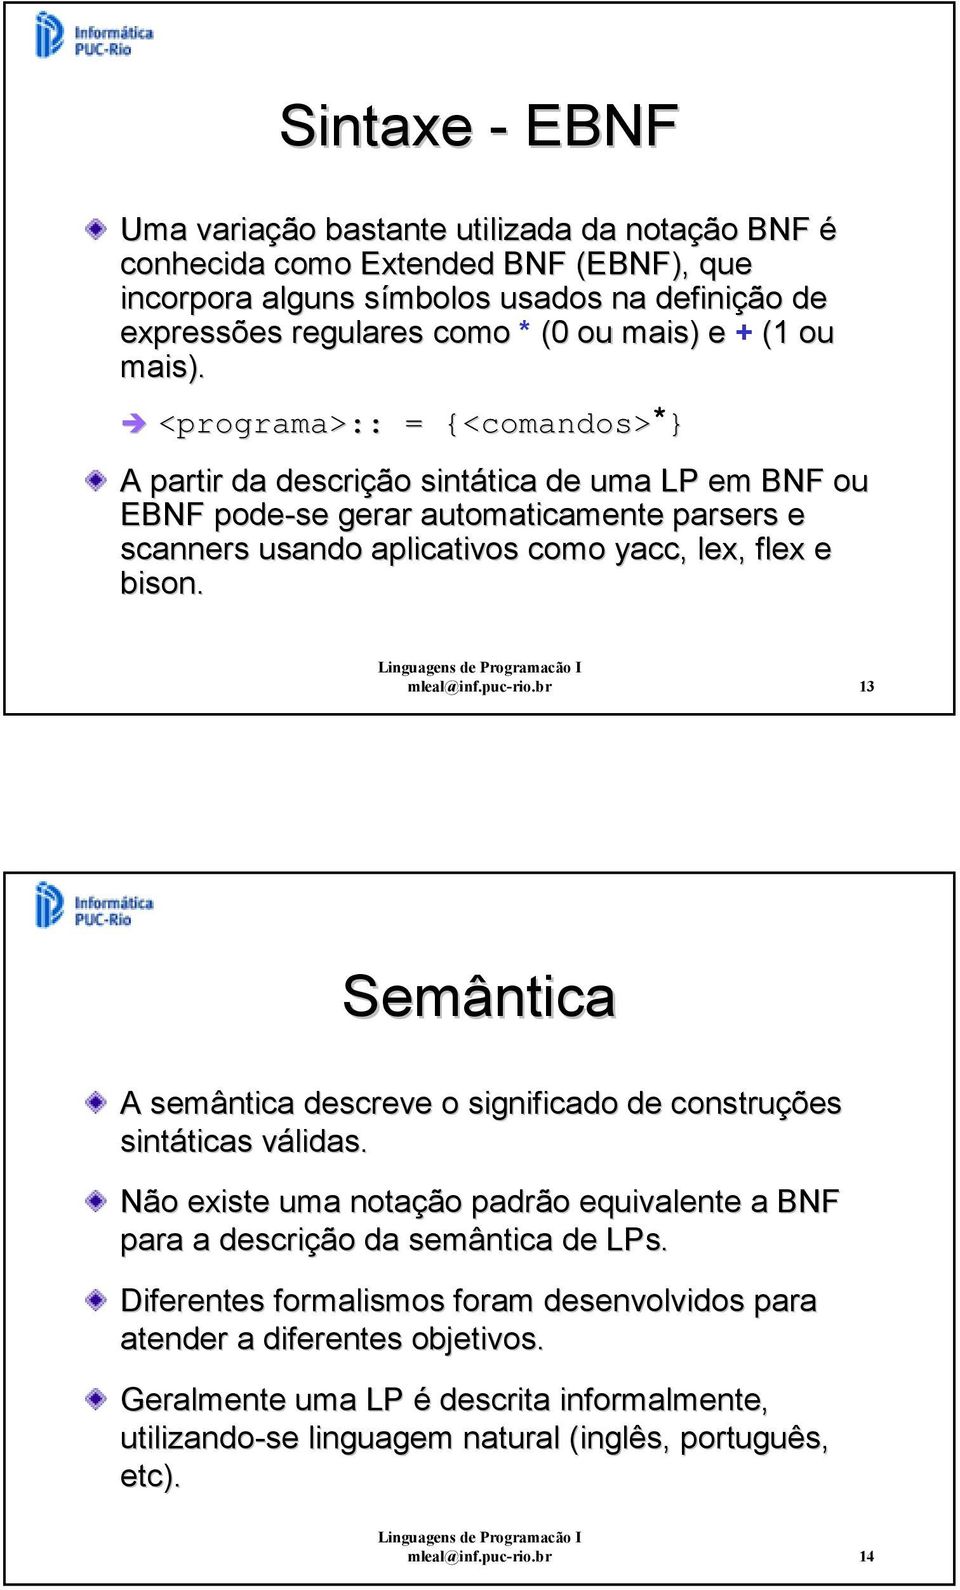 mleal@inf.puc-rio.br 3 Semântica A semântica descreve o significado de construções sintáticas válidas. Não existe uma notação padrão equivalente a BNF para a descrição da semântica de LPs.